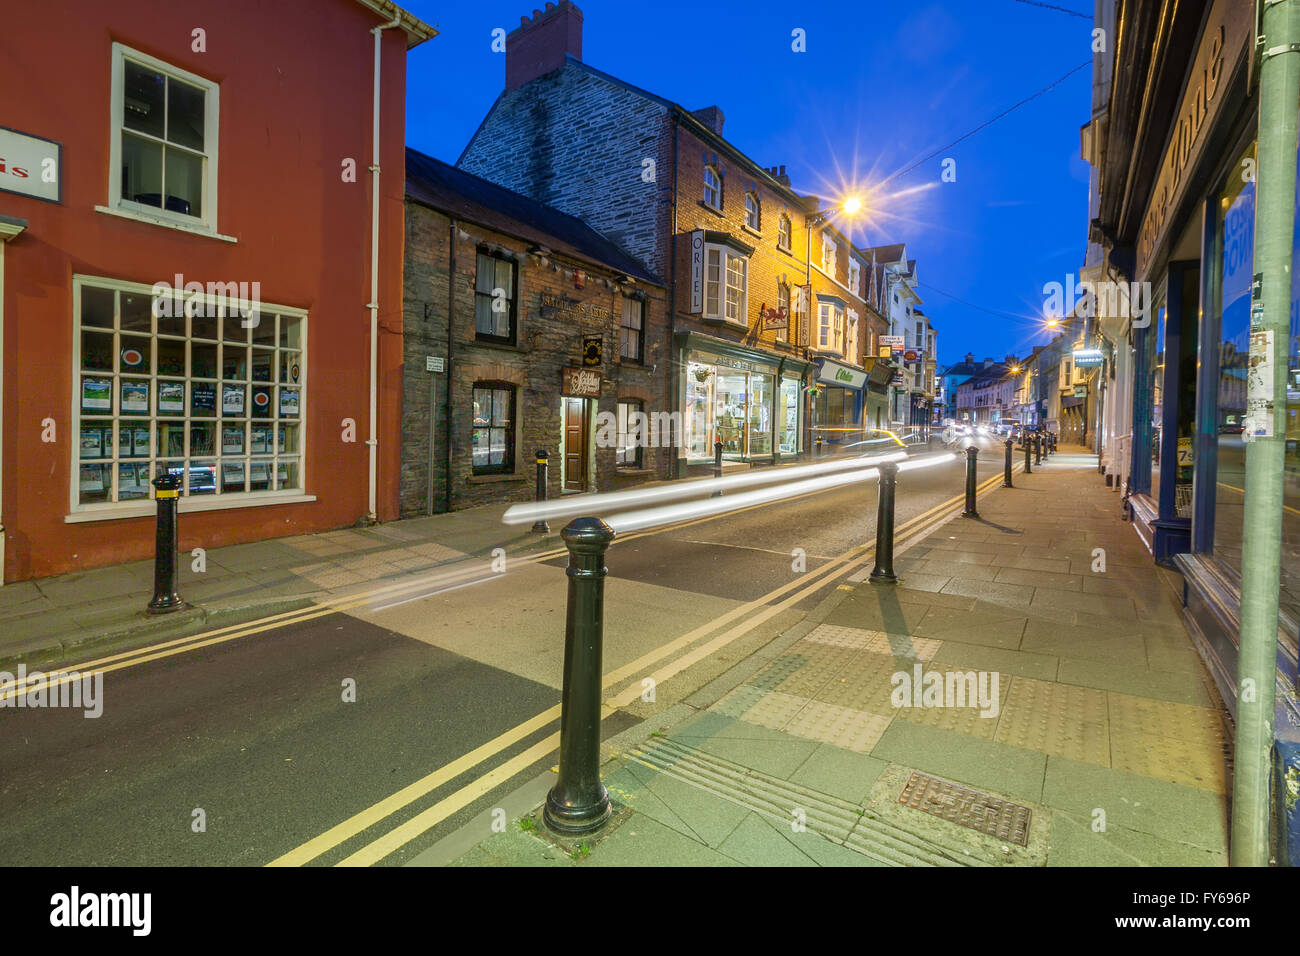 Cardigan High Street dans Ceredigion, pays de Galles. Prises au crépuscule avec des stries de lumière sentiers du trafic. Banque D'Images